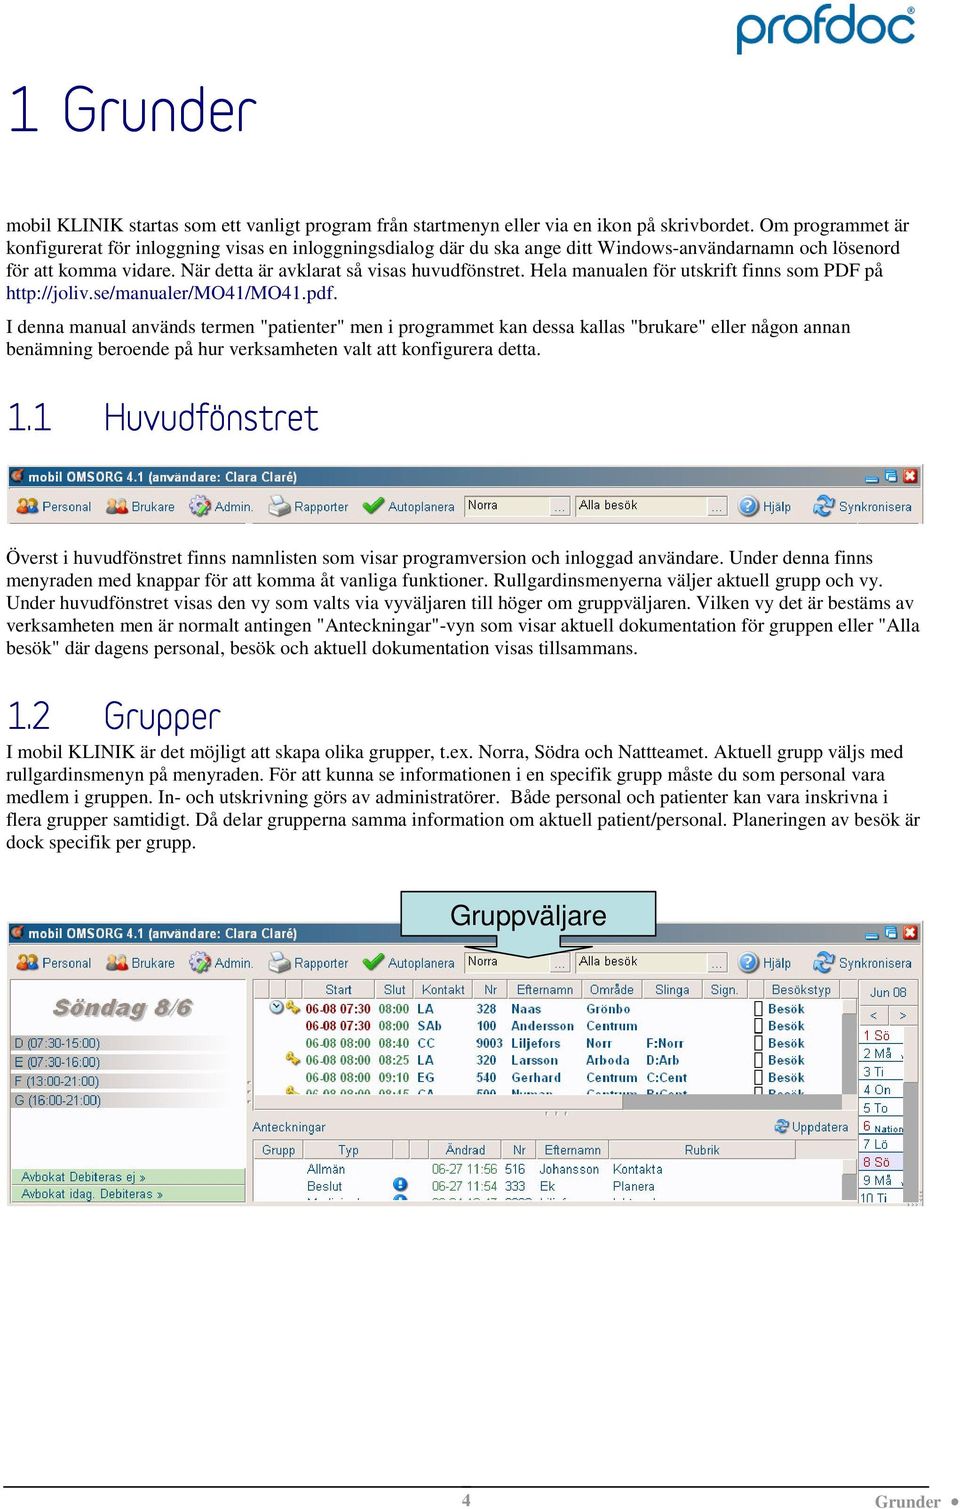 Hela manualen för utskrift finns som PDF på http://joliv.se/manualer/mo41/mo41.pdf.